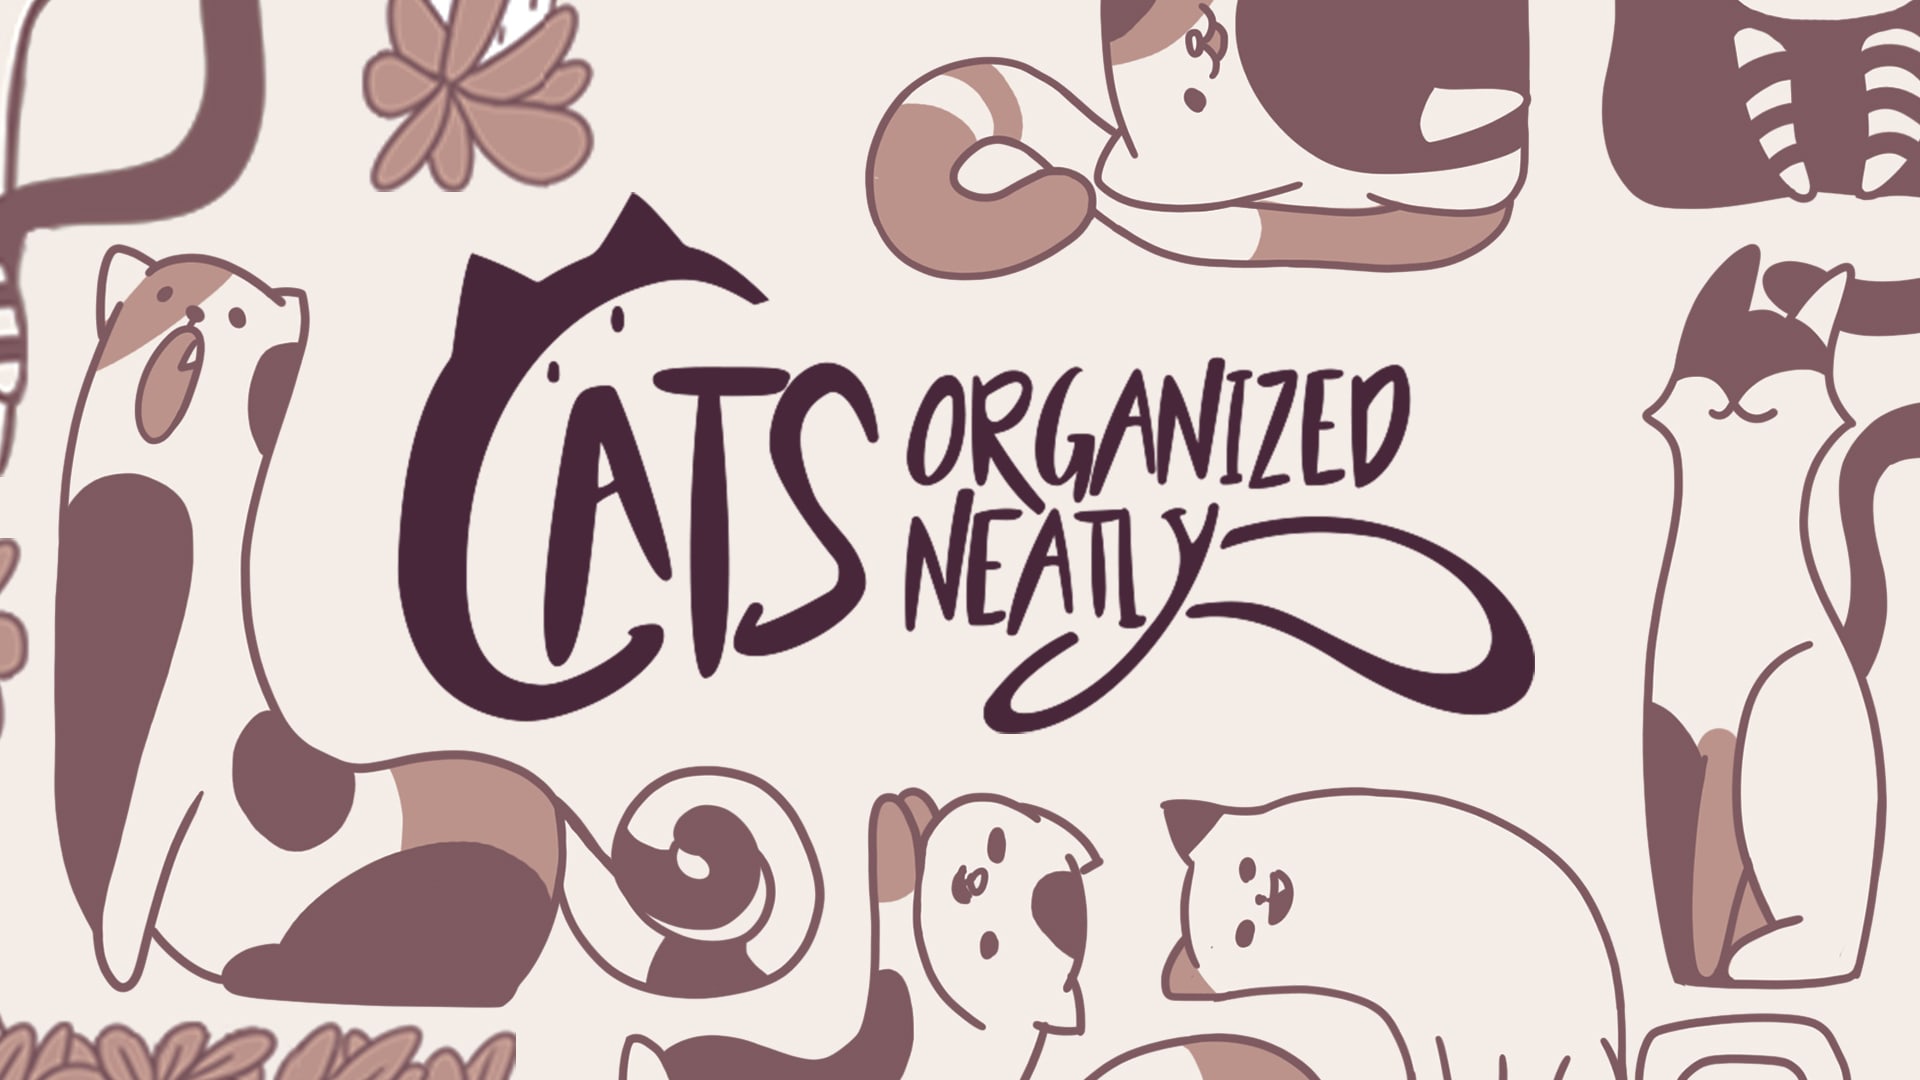 Cats Organized Neatly 1